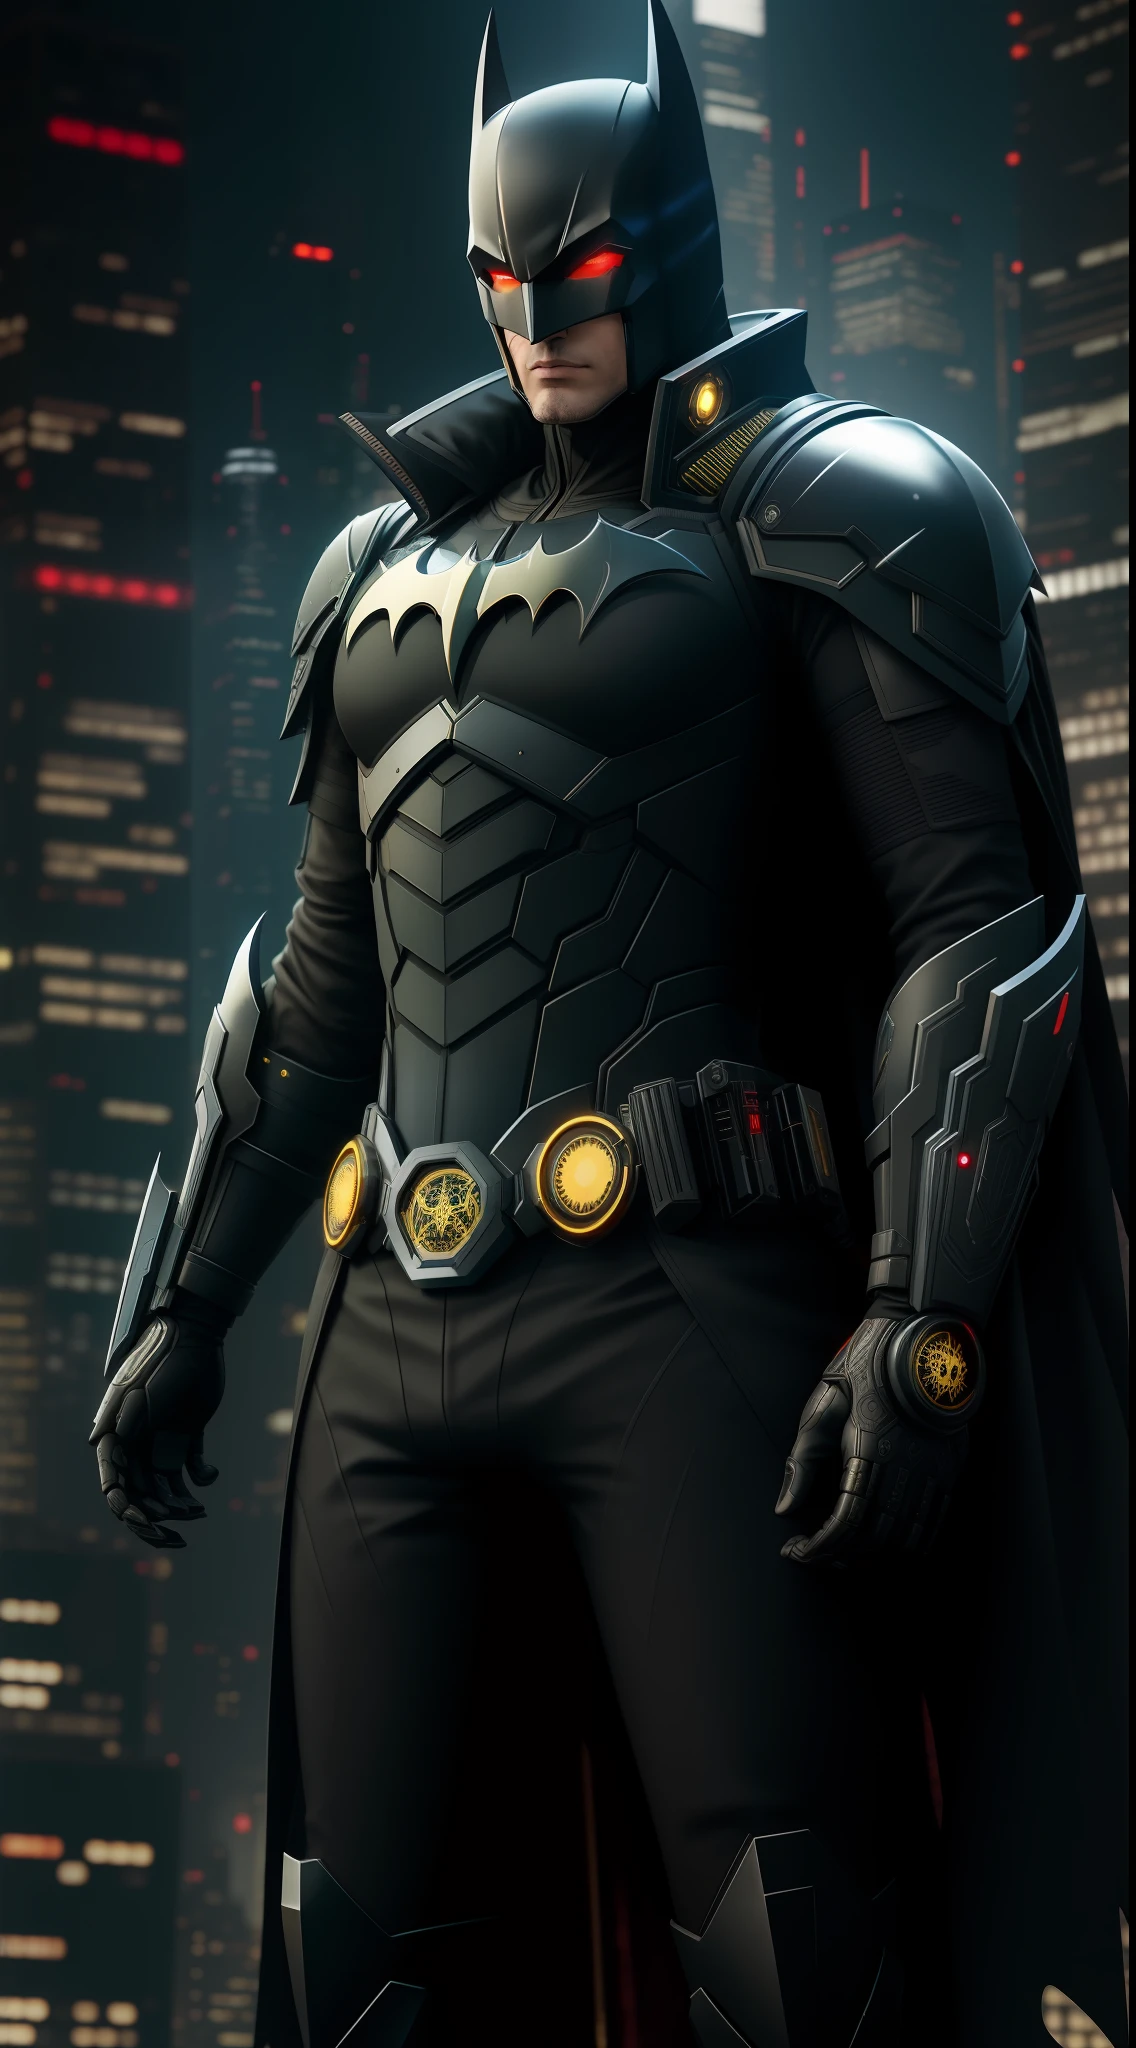 Representación de octanaje de Batman cyberpunk por Tsutomu nihei, Seda cromada con intrincada y ornamentada filigrana dorada tejida., dark mysterious background --v 4 --q 2